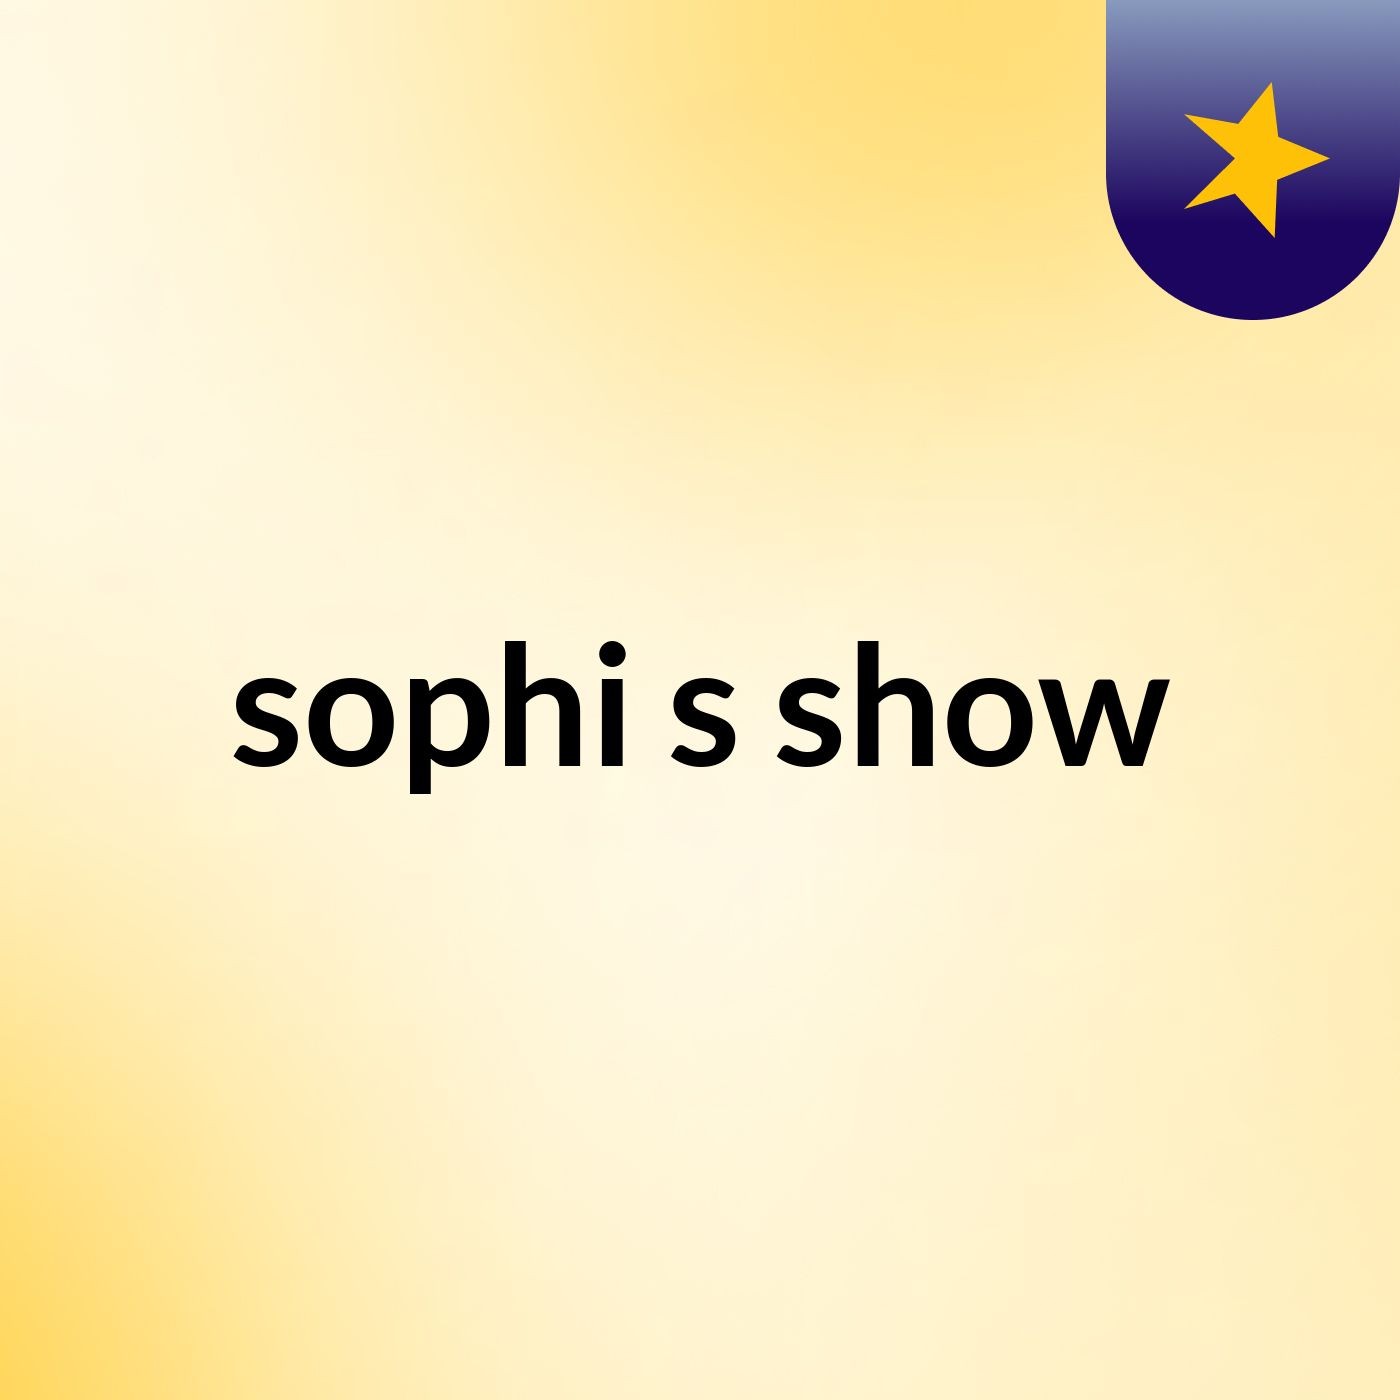 sophi's show